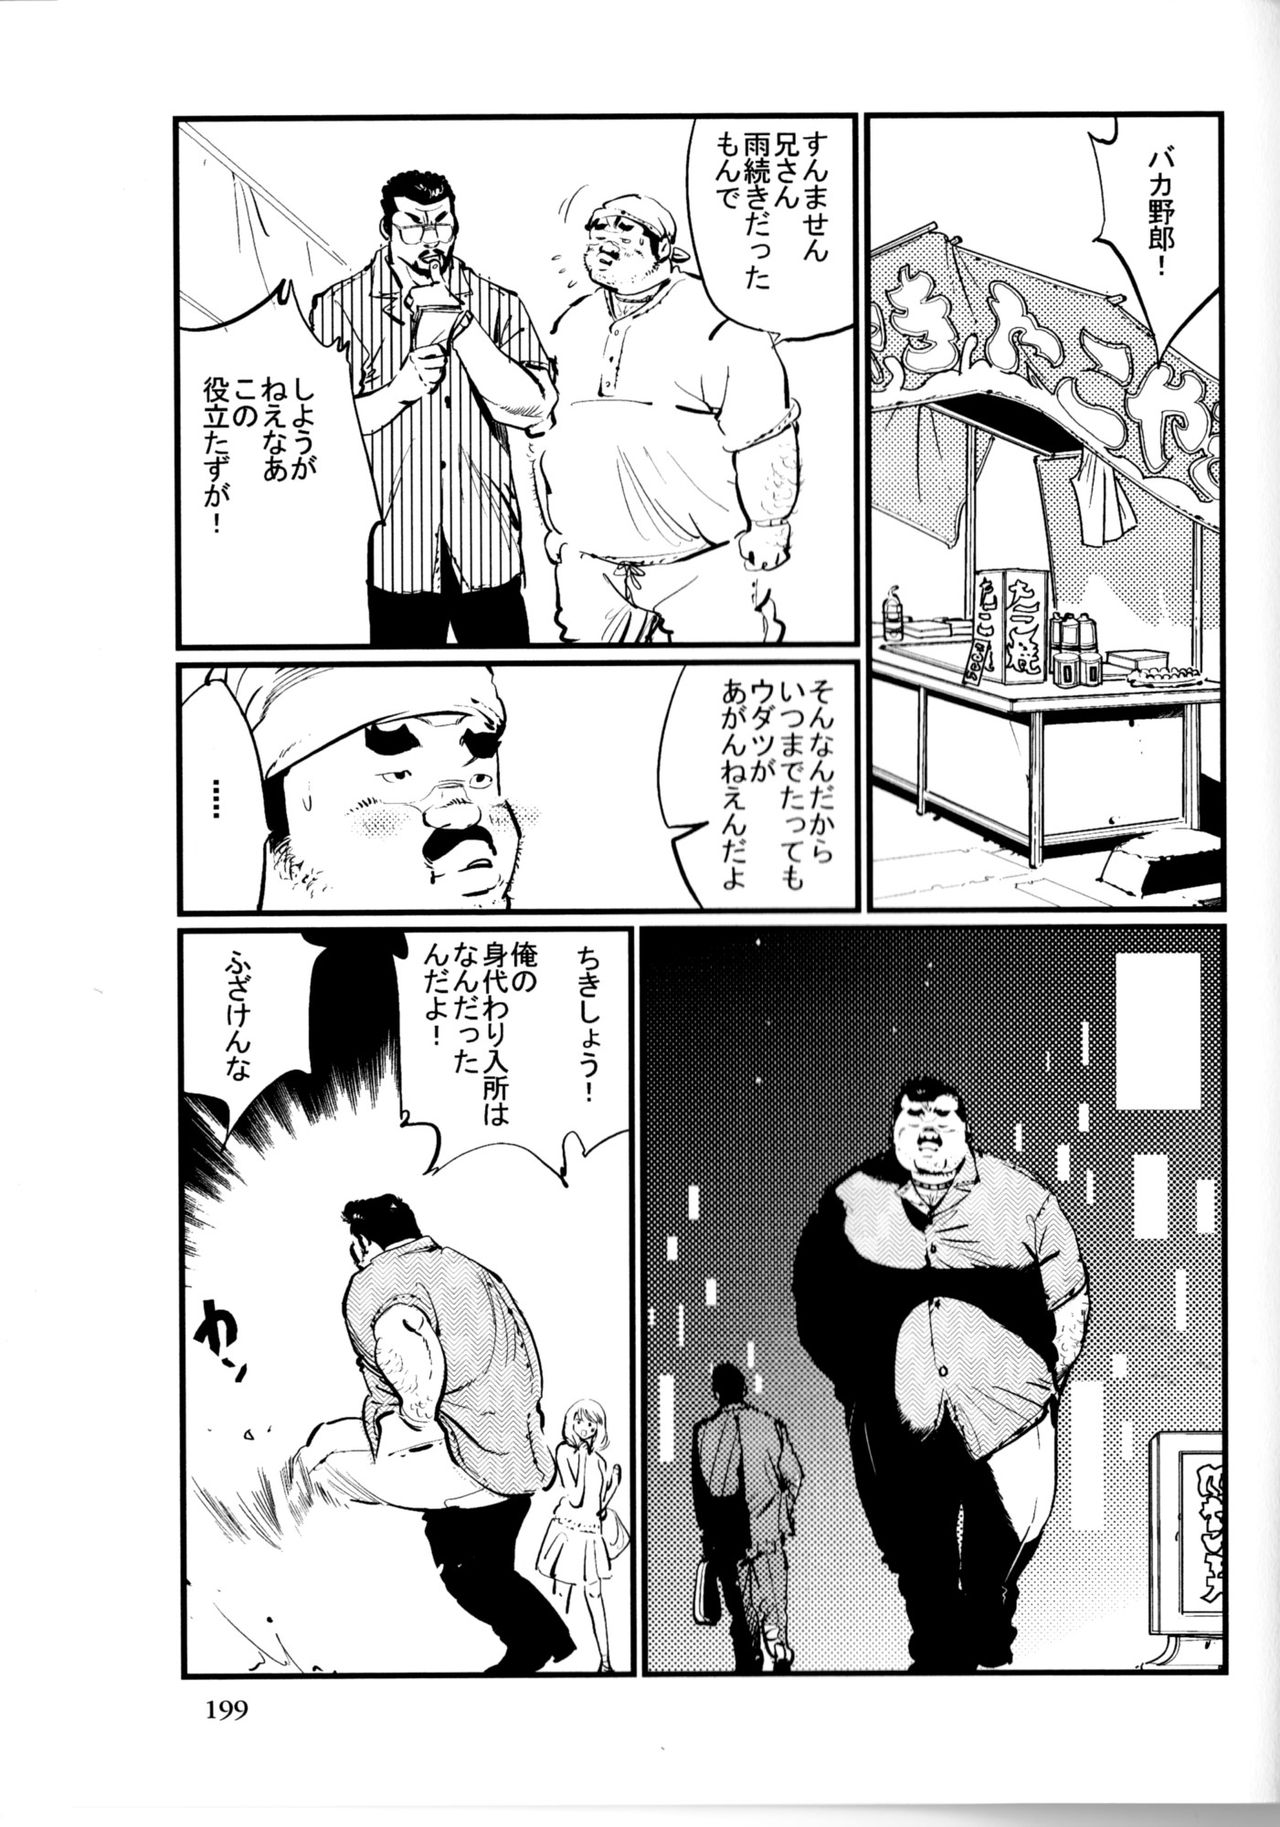 [Kobinata] Tenkei Mondai (SAMSON No.363 2012-10) page 7 full